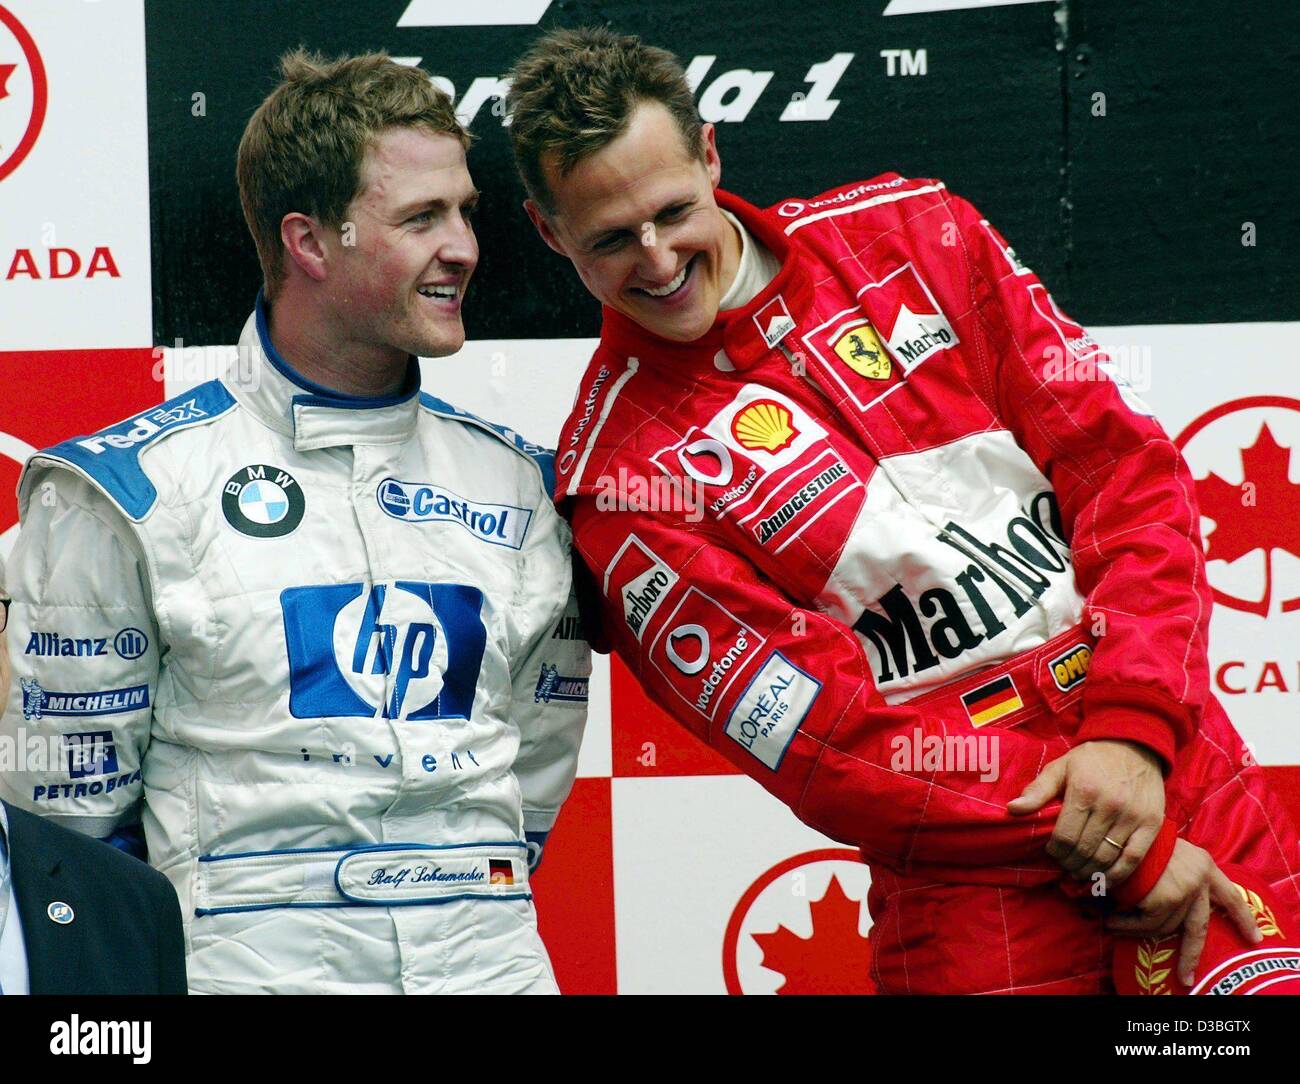 (Afp) - L'allemand champion du monde de Formule 1 Michael Schumacher (Ferrari) (R) se distingue avec son frère pilote de Formule 1 allemand Ralf Schumacher pendant la cérémonie de remise des prix sur le circuit Gilles Villeneuve de la formule 1 après le Grand Prix du Canada à Montréal, Canada, 15 juin 2003. Michael Sc Banque D'Images